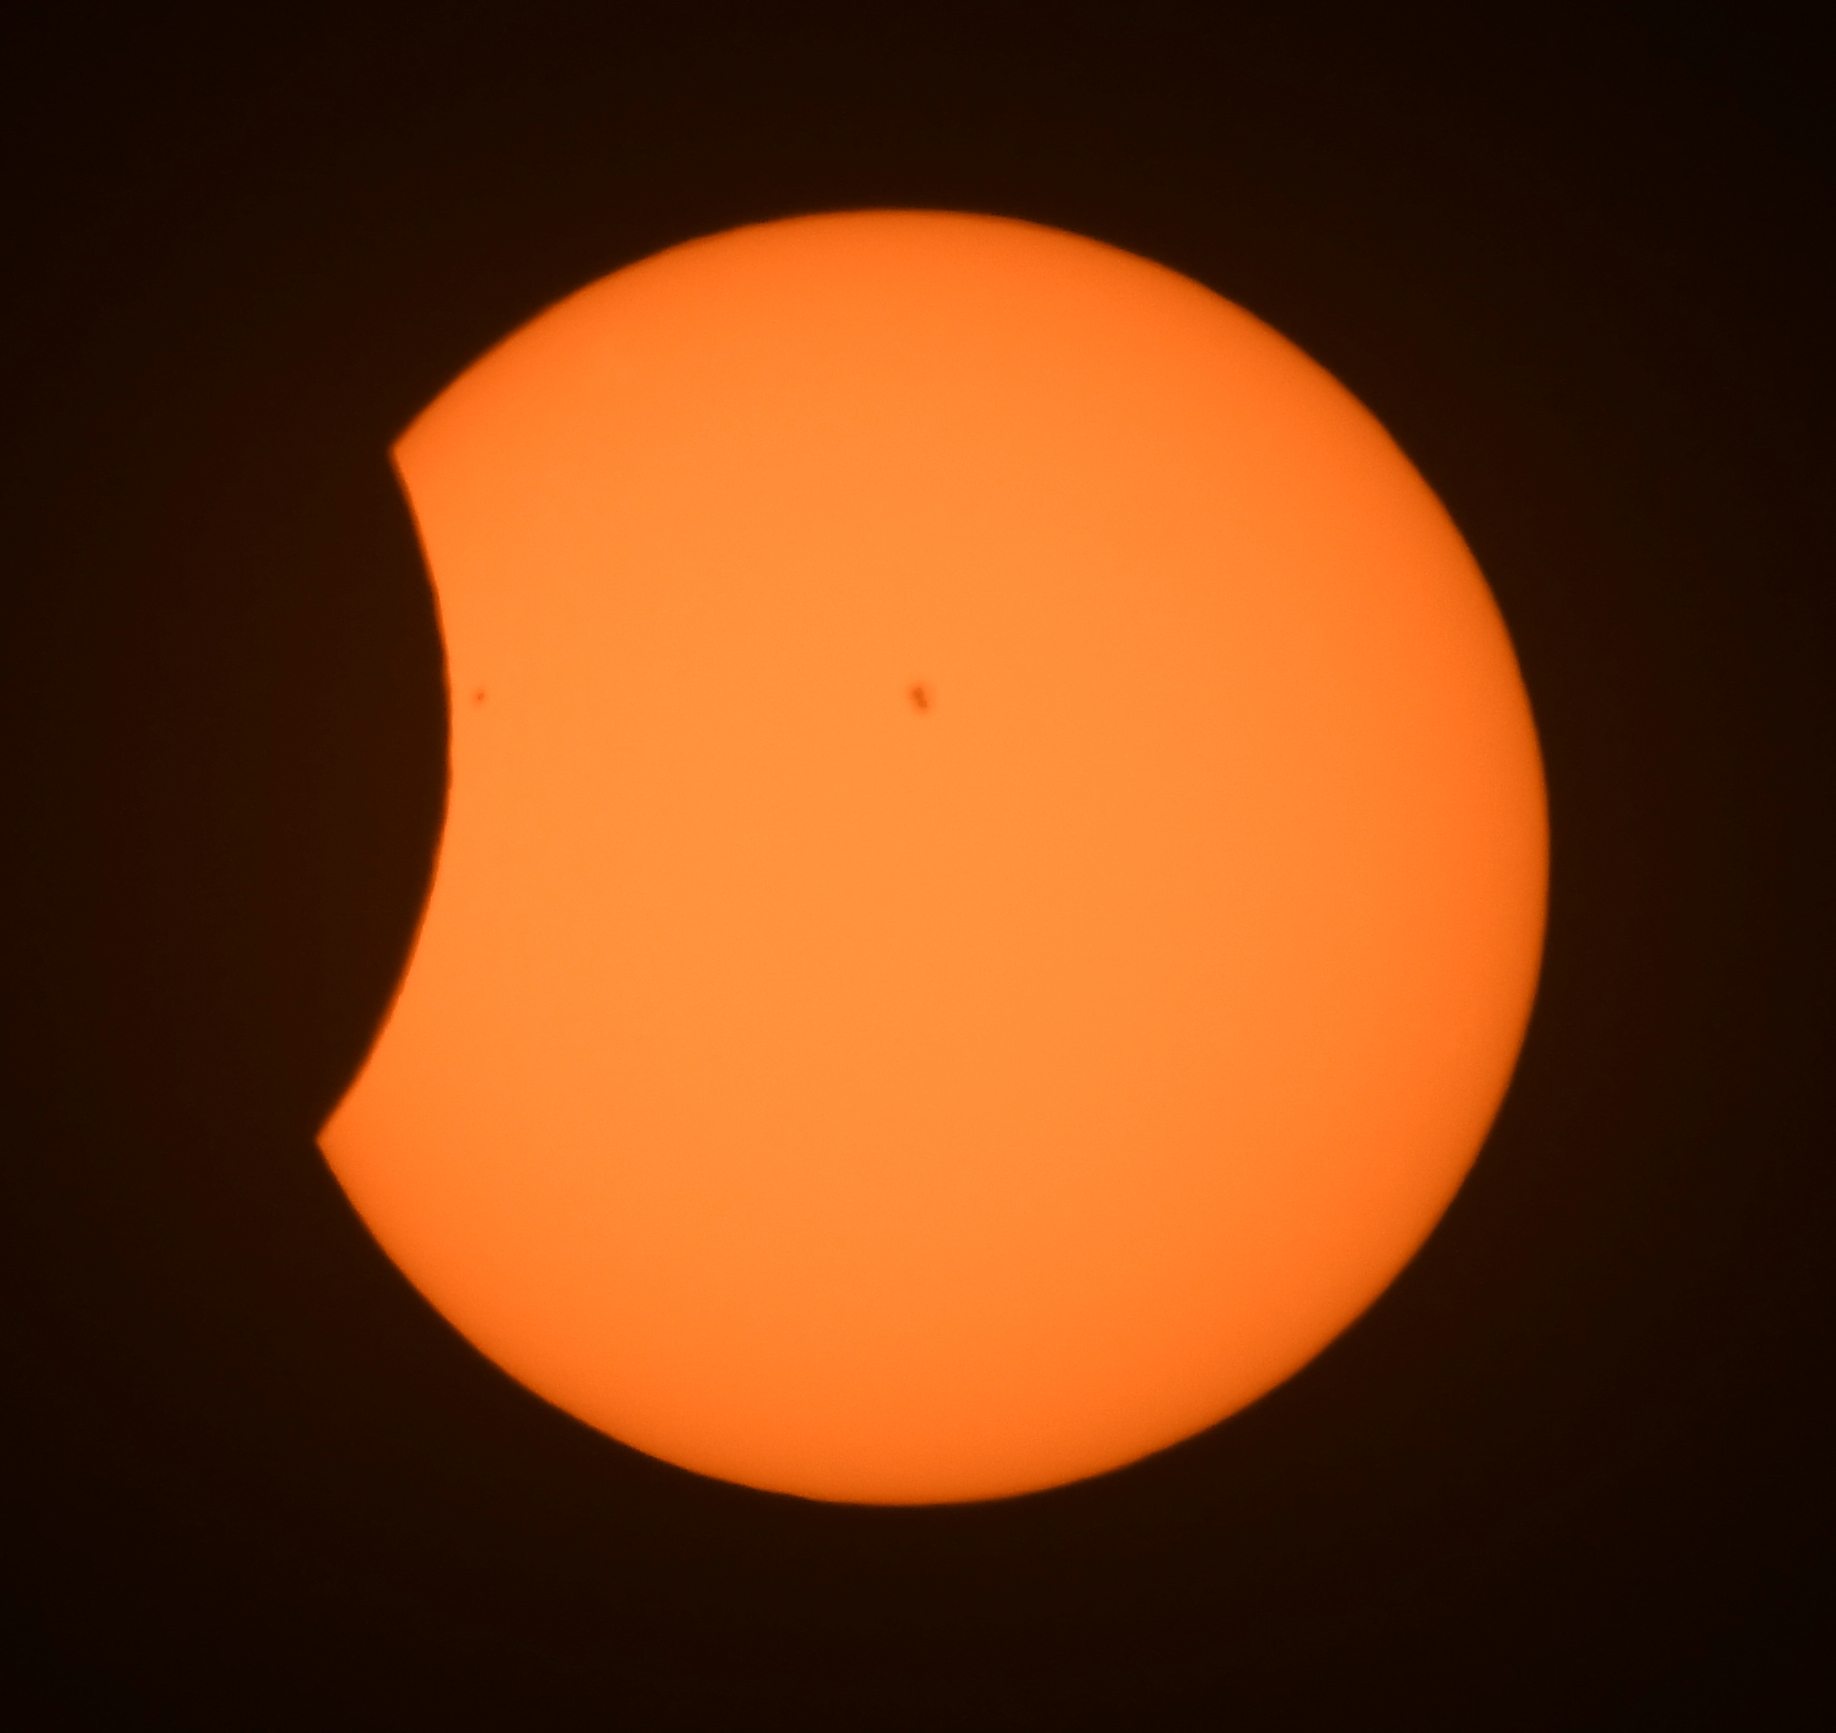 Eclipse of the Sun 8 April 2024 DSC_7028